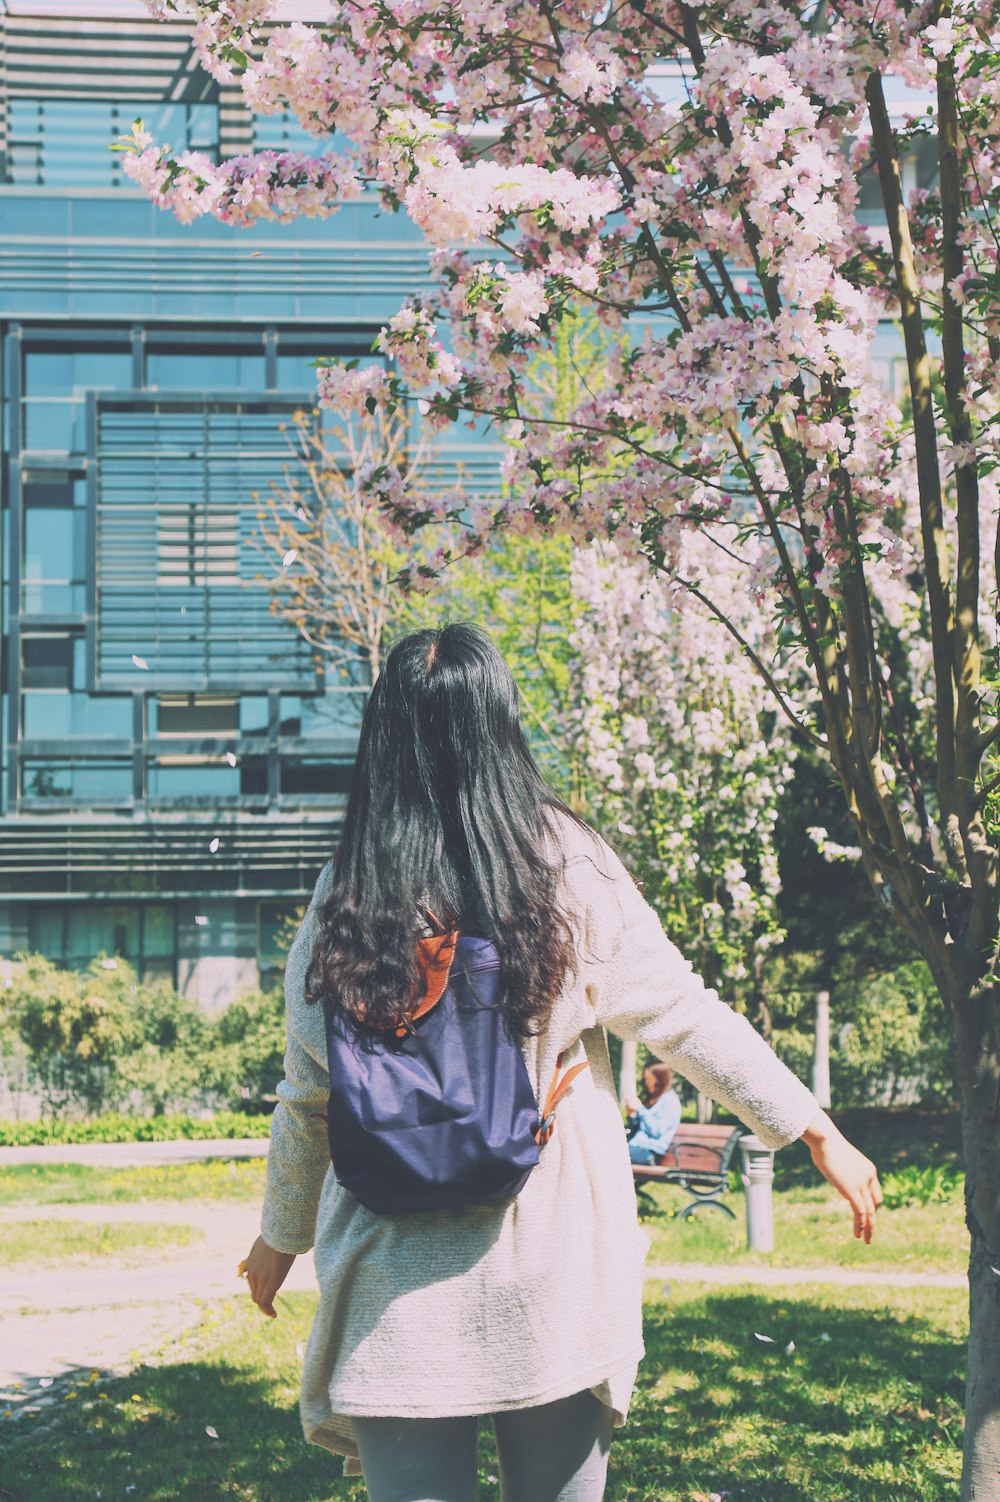 donna che cammina verso l'albero di ciliegio in fiore